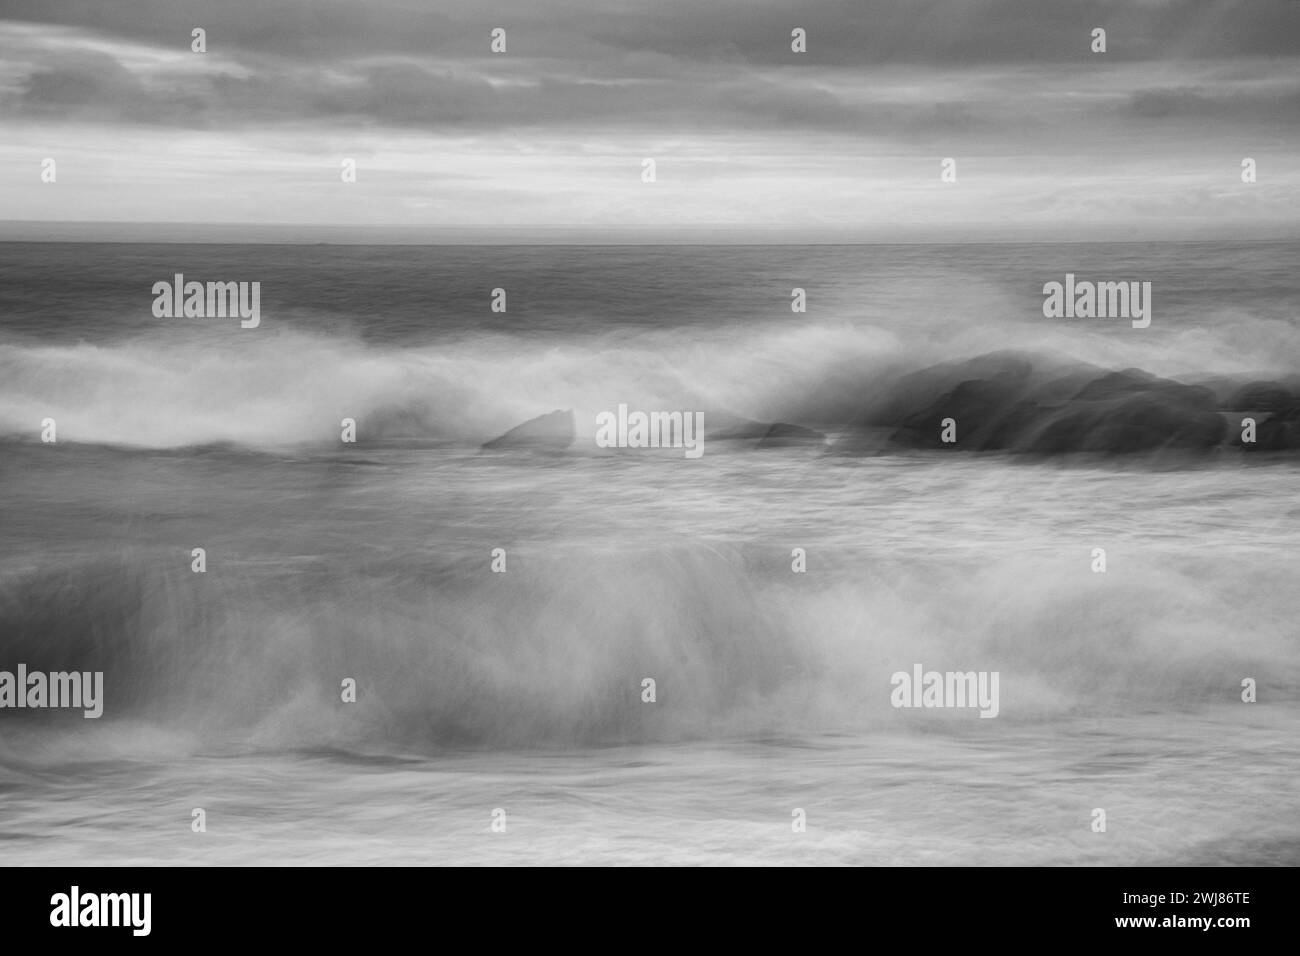 Obturateur lent et mouvement intentionnel de la caméra photo monochrome de vagues et de rochers brisés sur la côte de Cornouailles au Lizard à Dollar Cove, Gunwalloe Banque D'Images